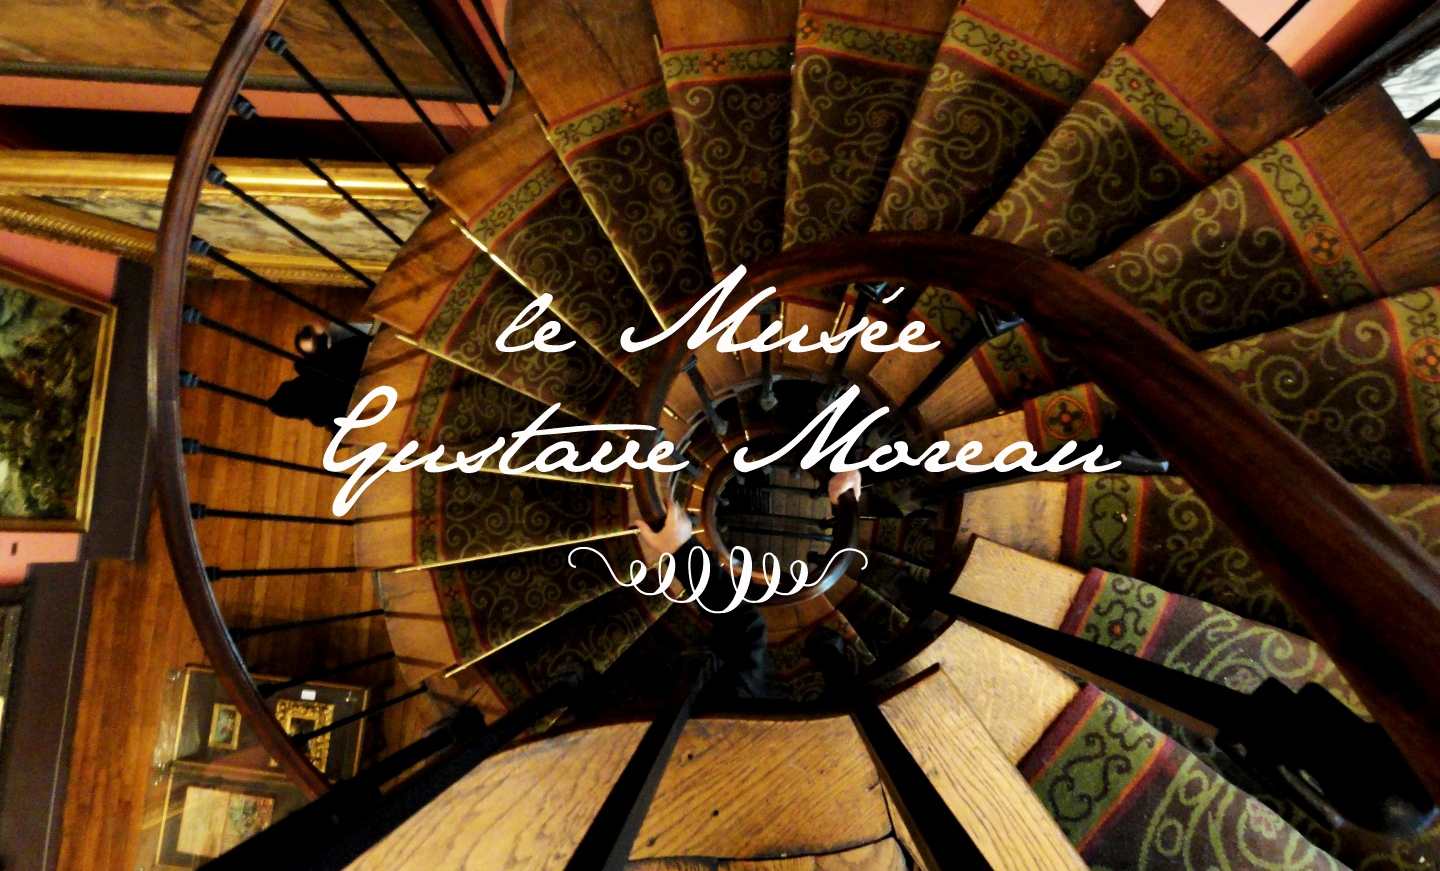 Le Musée Gustave Moreau